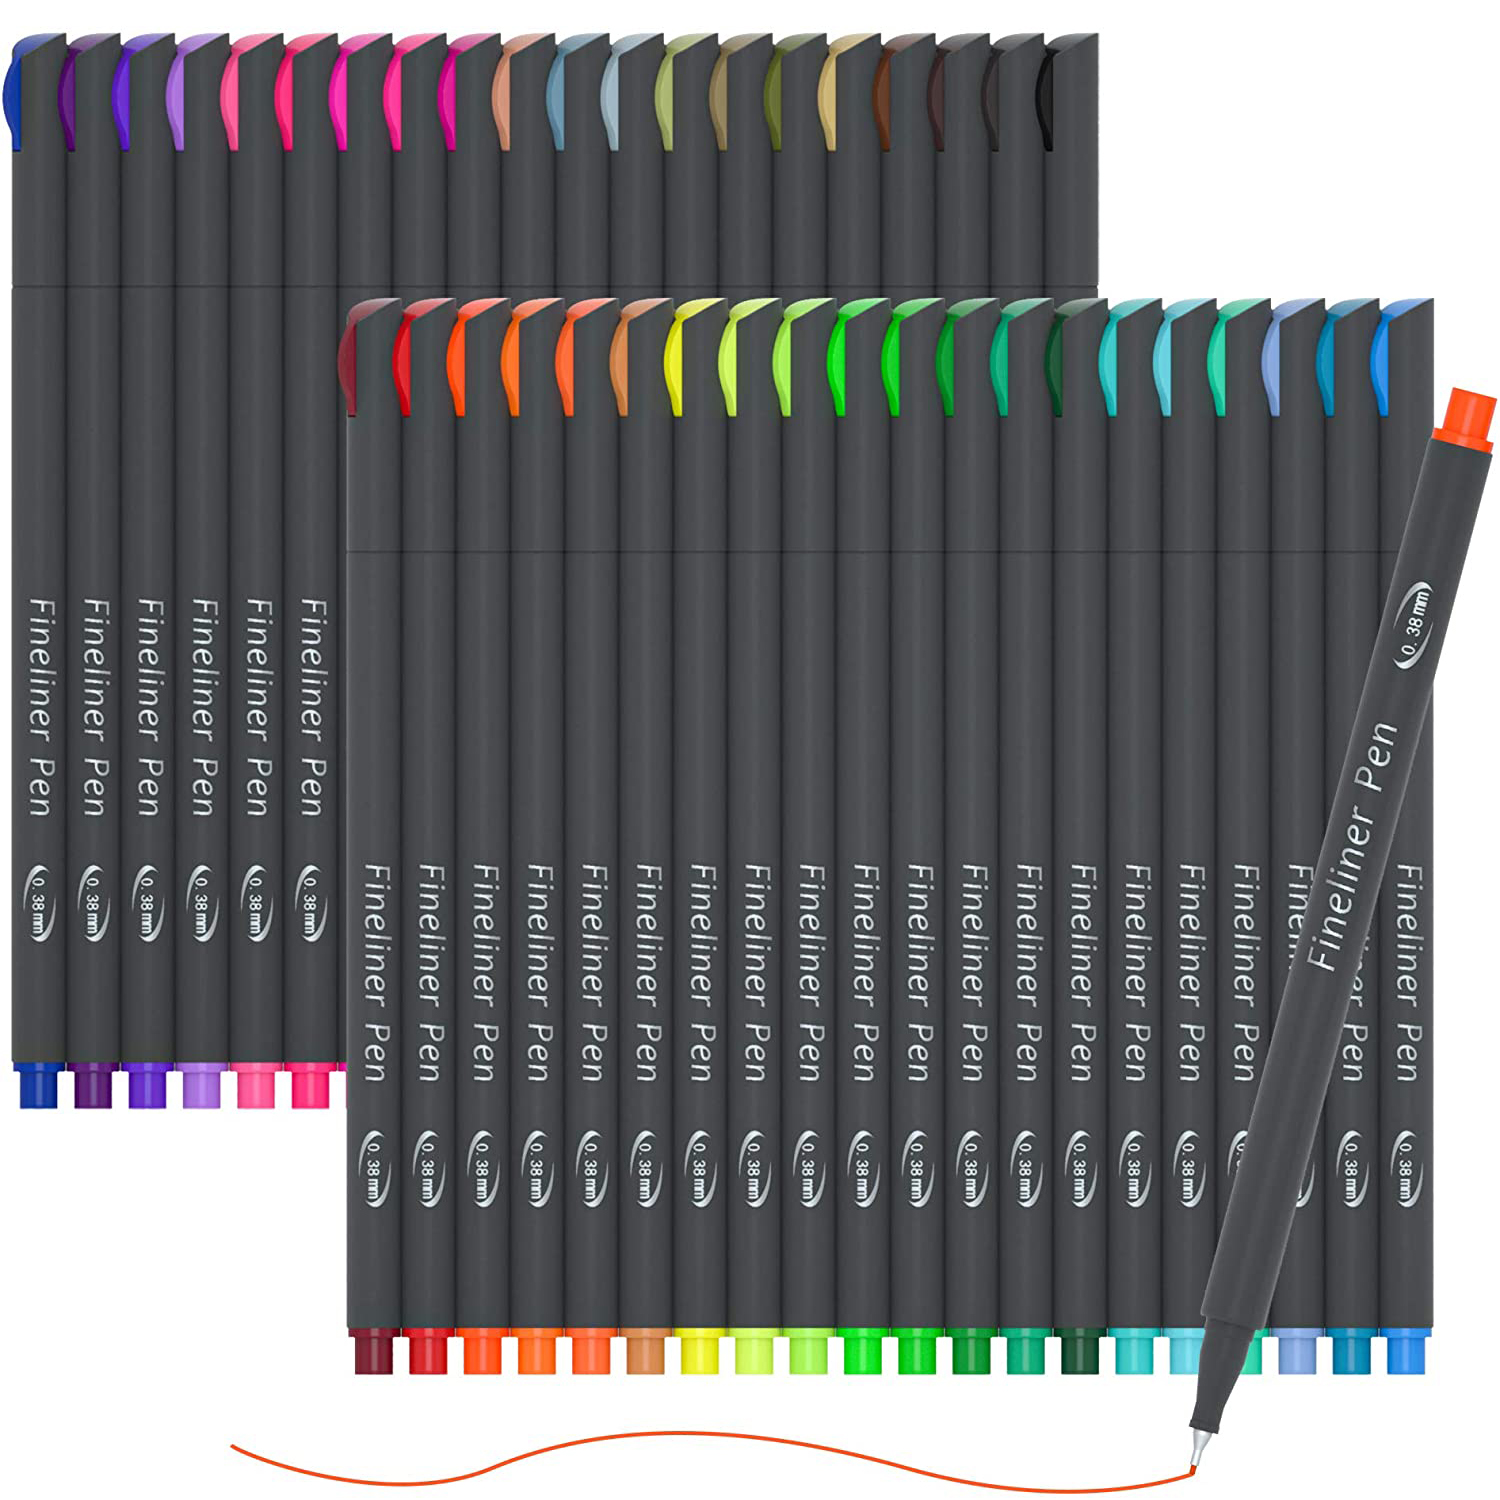 60 가지 색상 저널 플래너 펜 라인 온 60 가지 색상 Fineliner Pens 저널 플래너에 완벽한 세트 Note Calendar Coloring 0.4mm Pen